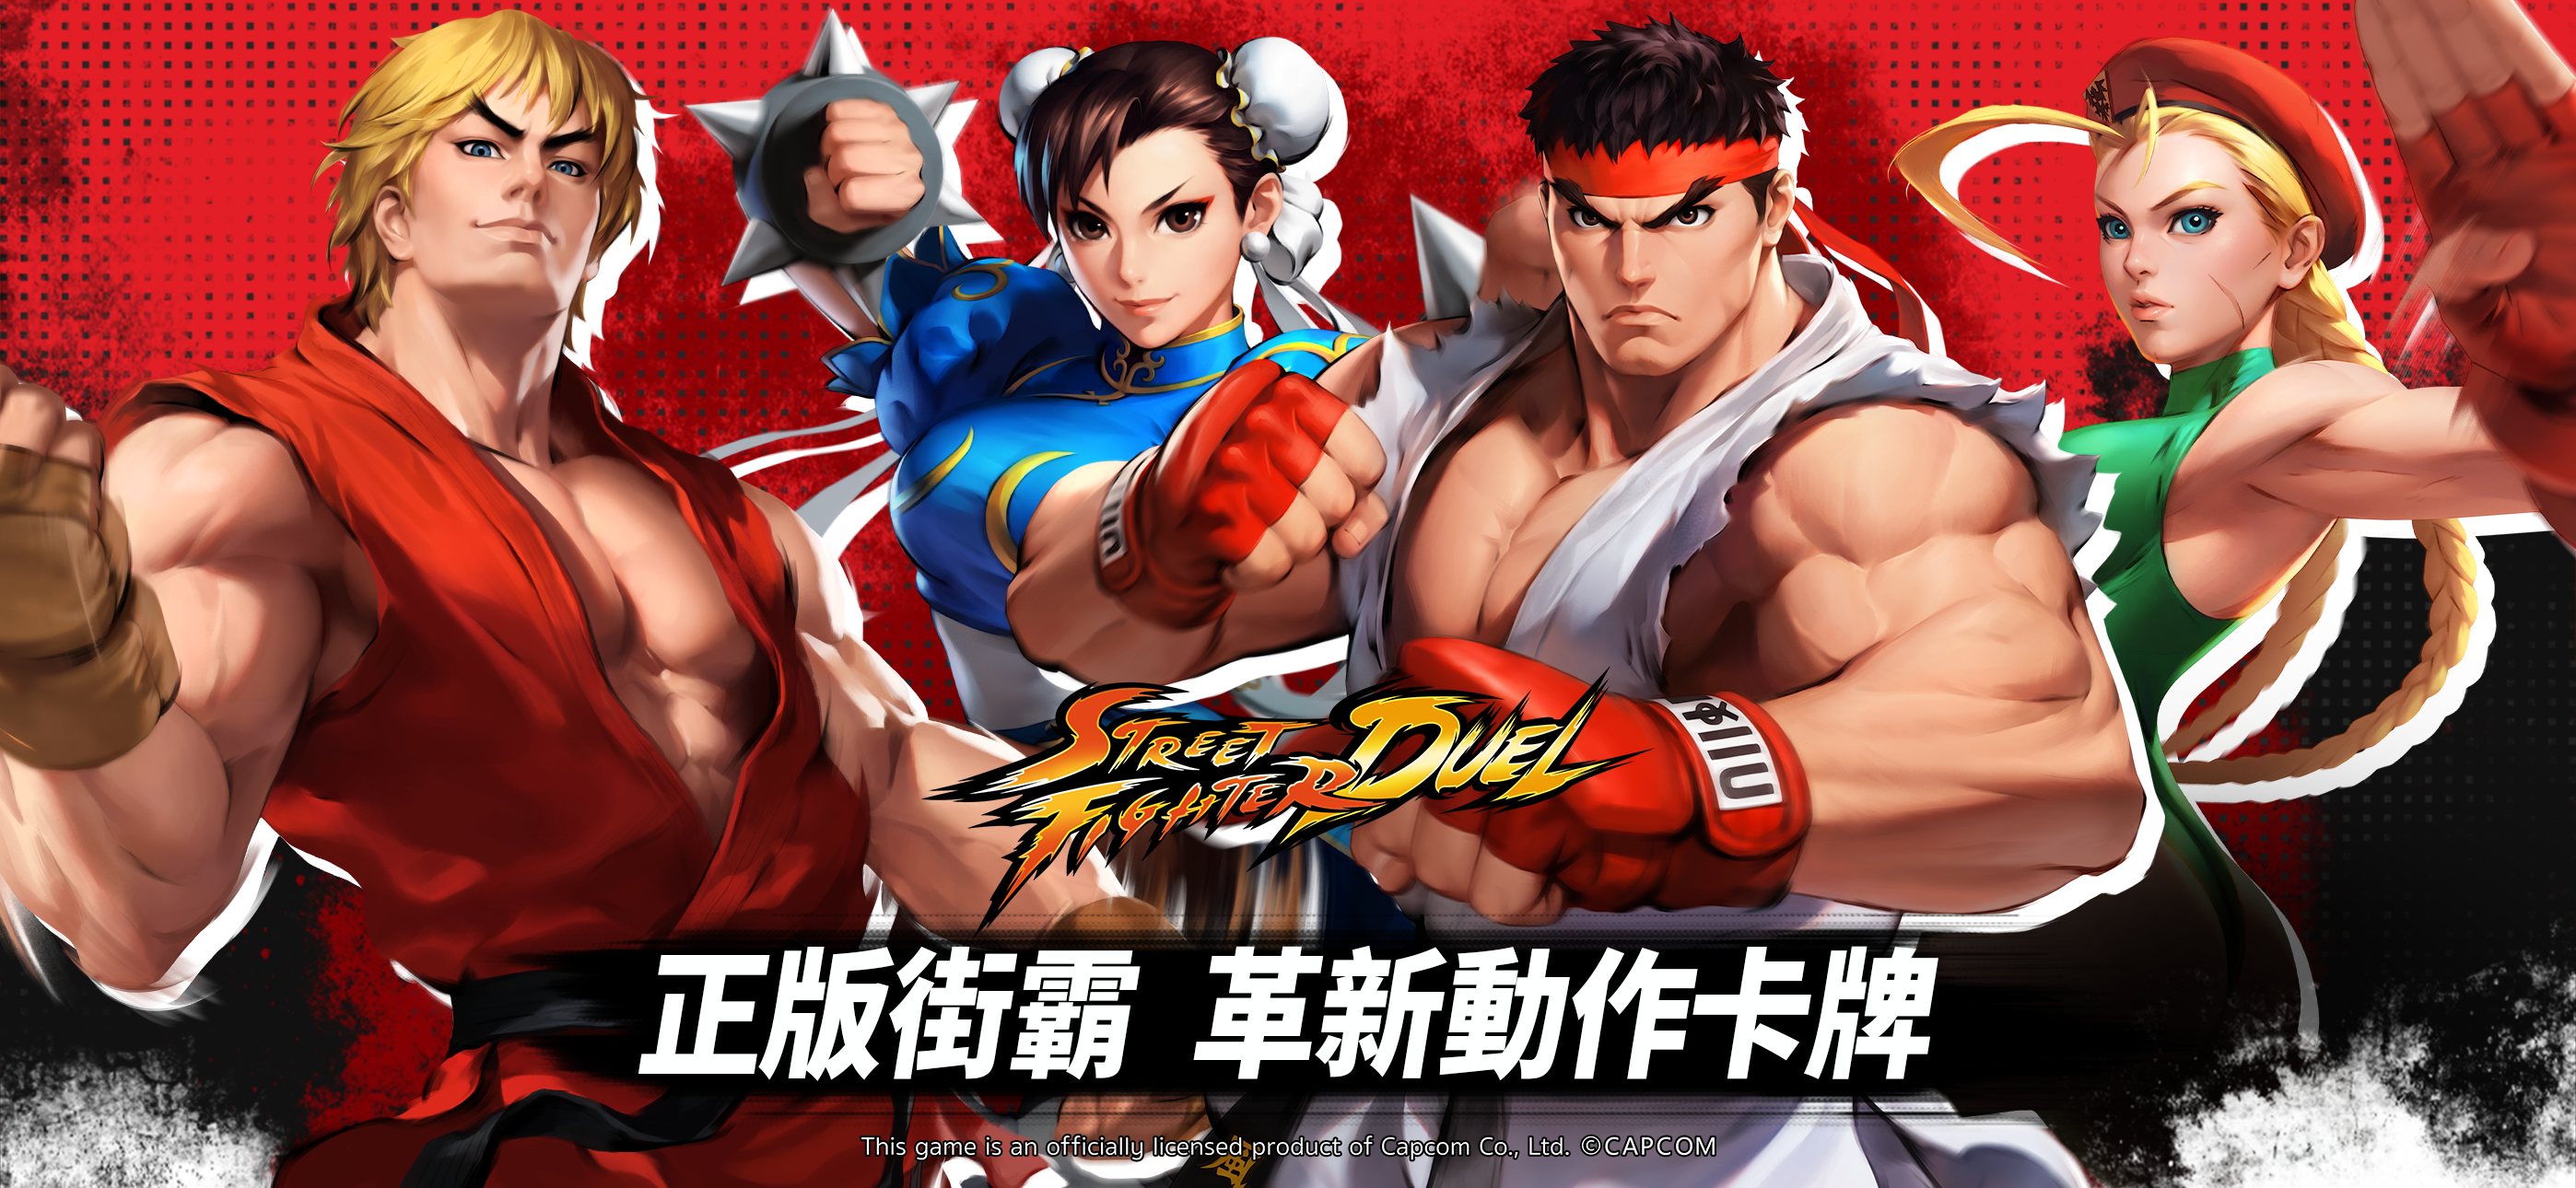 Screenshot 1 of Street Fighter: Duel 1.0.4